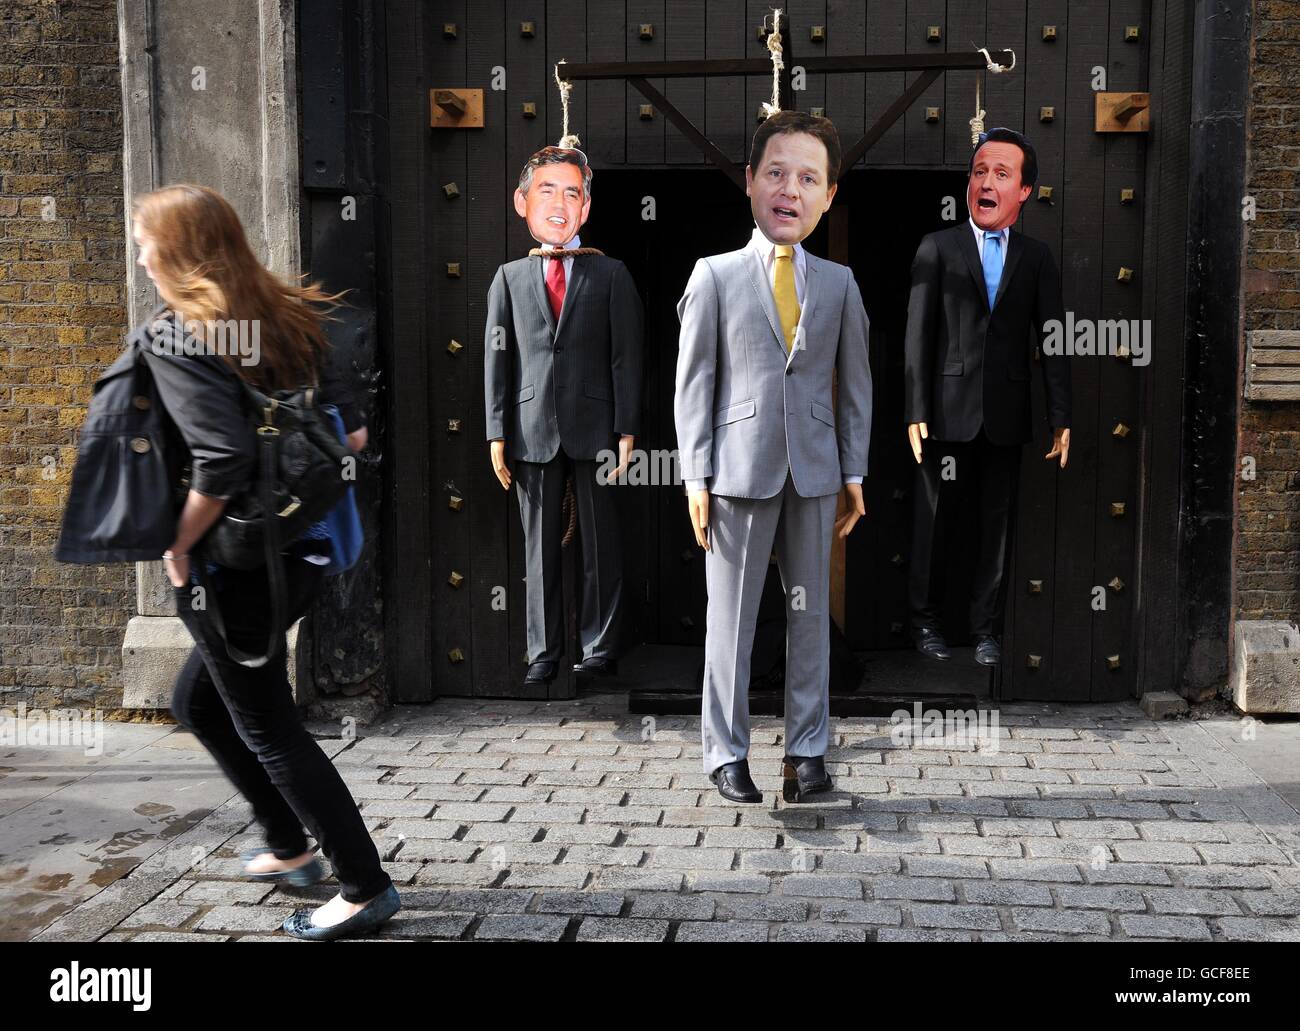 Ein Repräsentationsparlament hing im London Dungeon mit Premierminister Gordon Brown (links), Liberaldemokrat, Nick Clegg und Konservativem David Cameron in Nosen, die an einem Gibbett vor dem London Dungeon, Southwark, hängen. Stockfoto